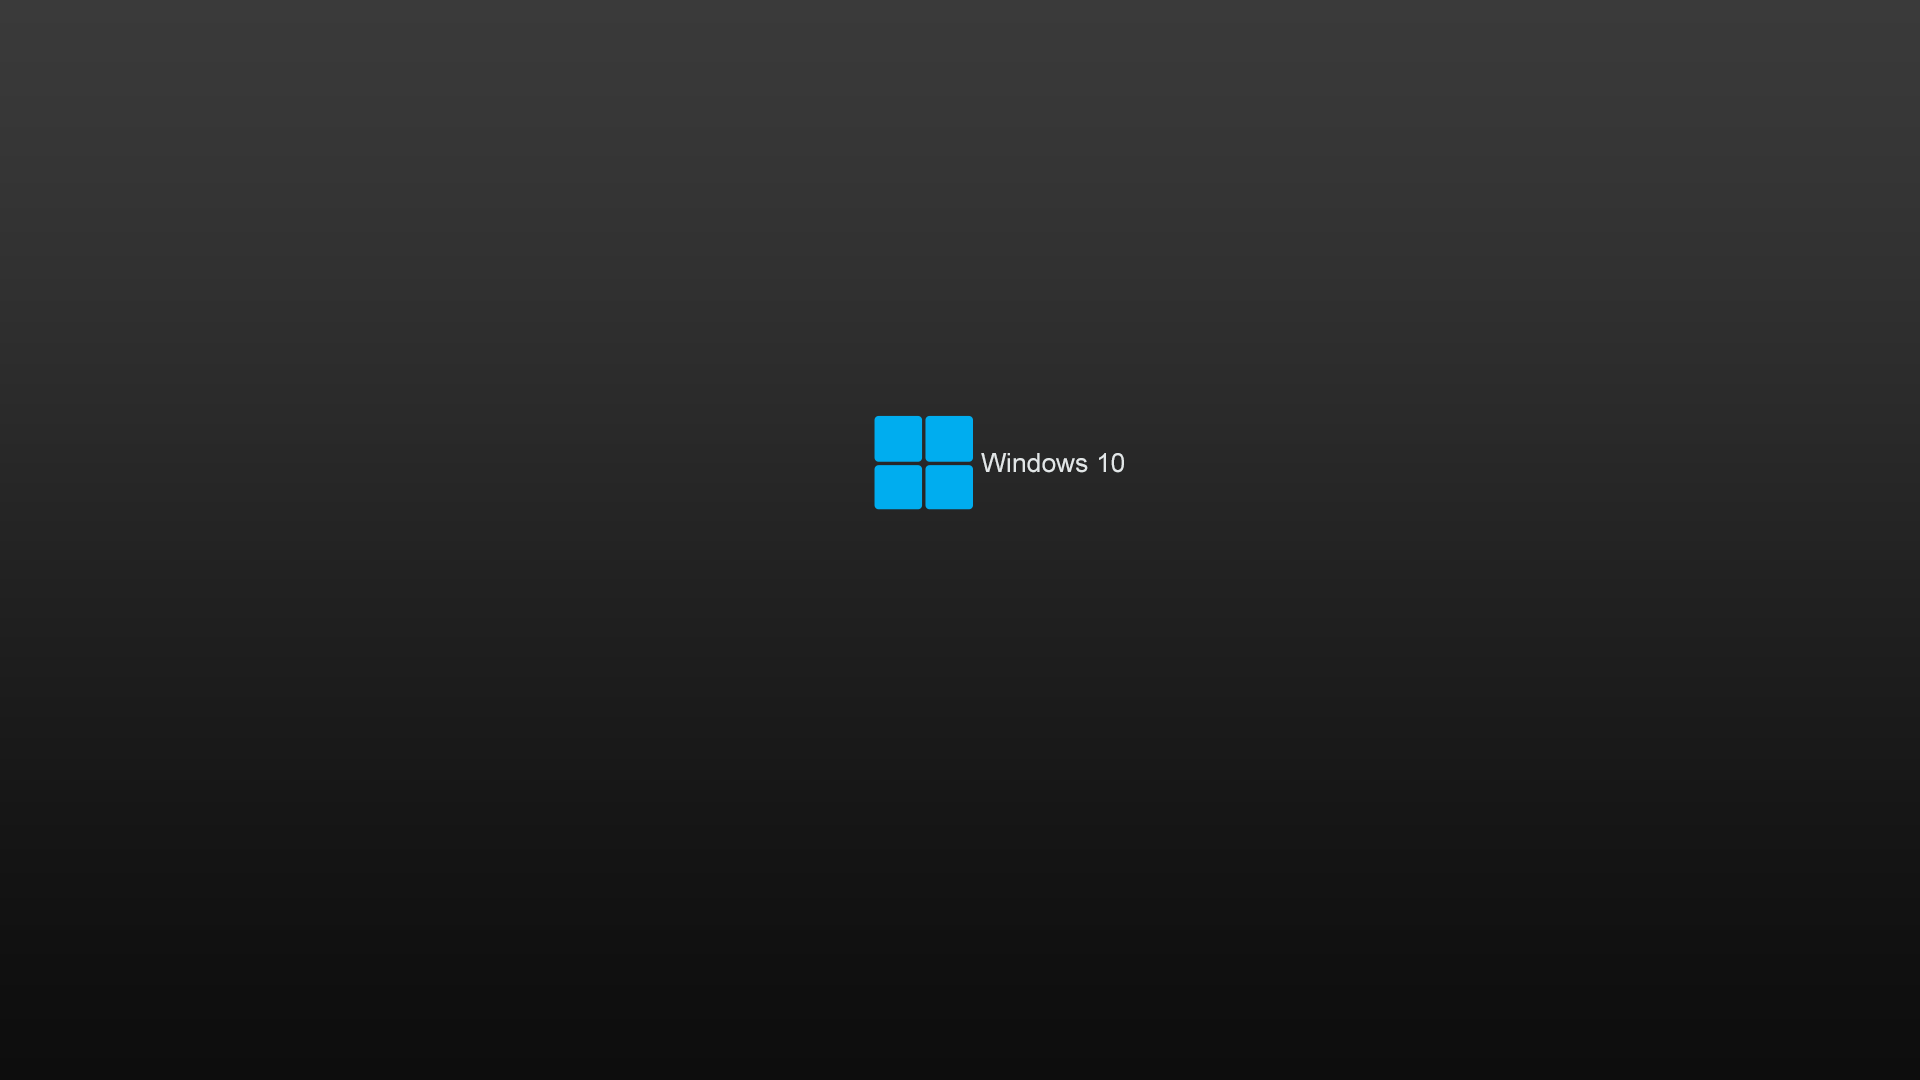 Windows 10 HD Dark Wallpaper - WallpaperSafari